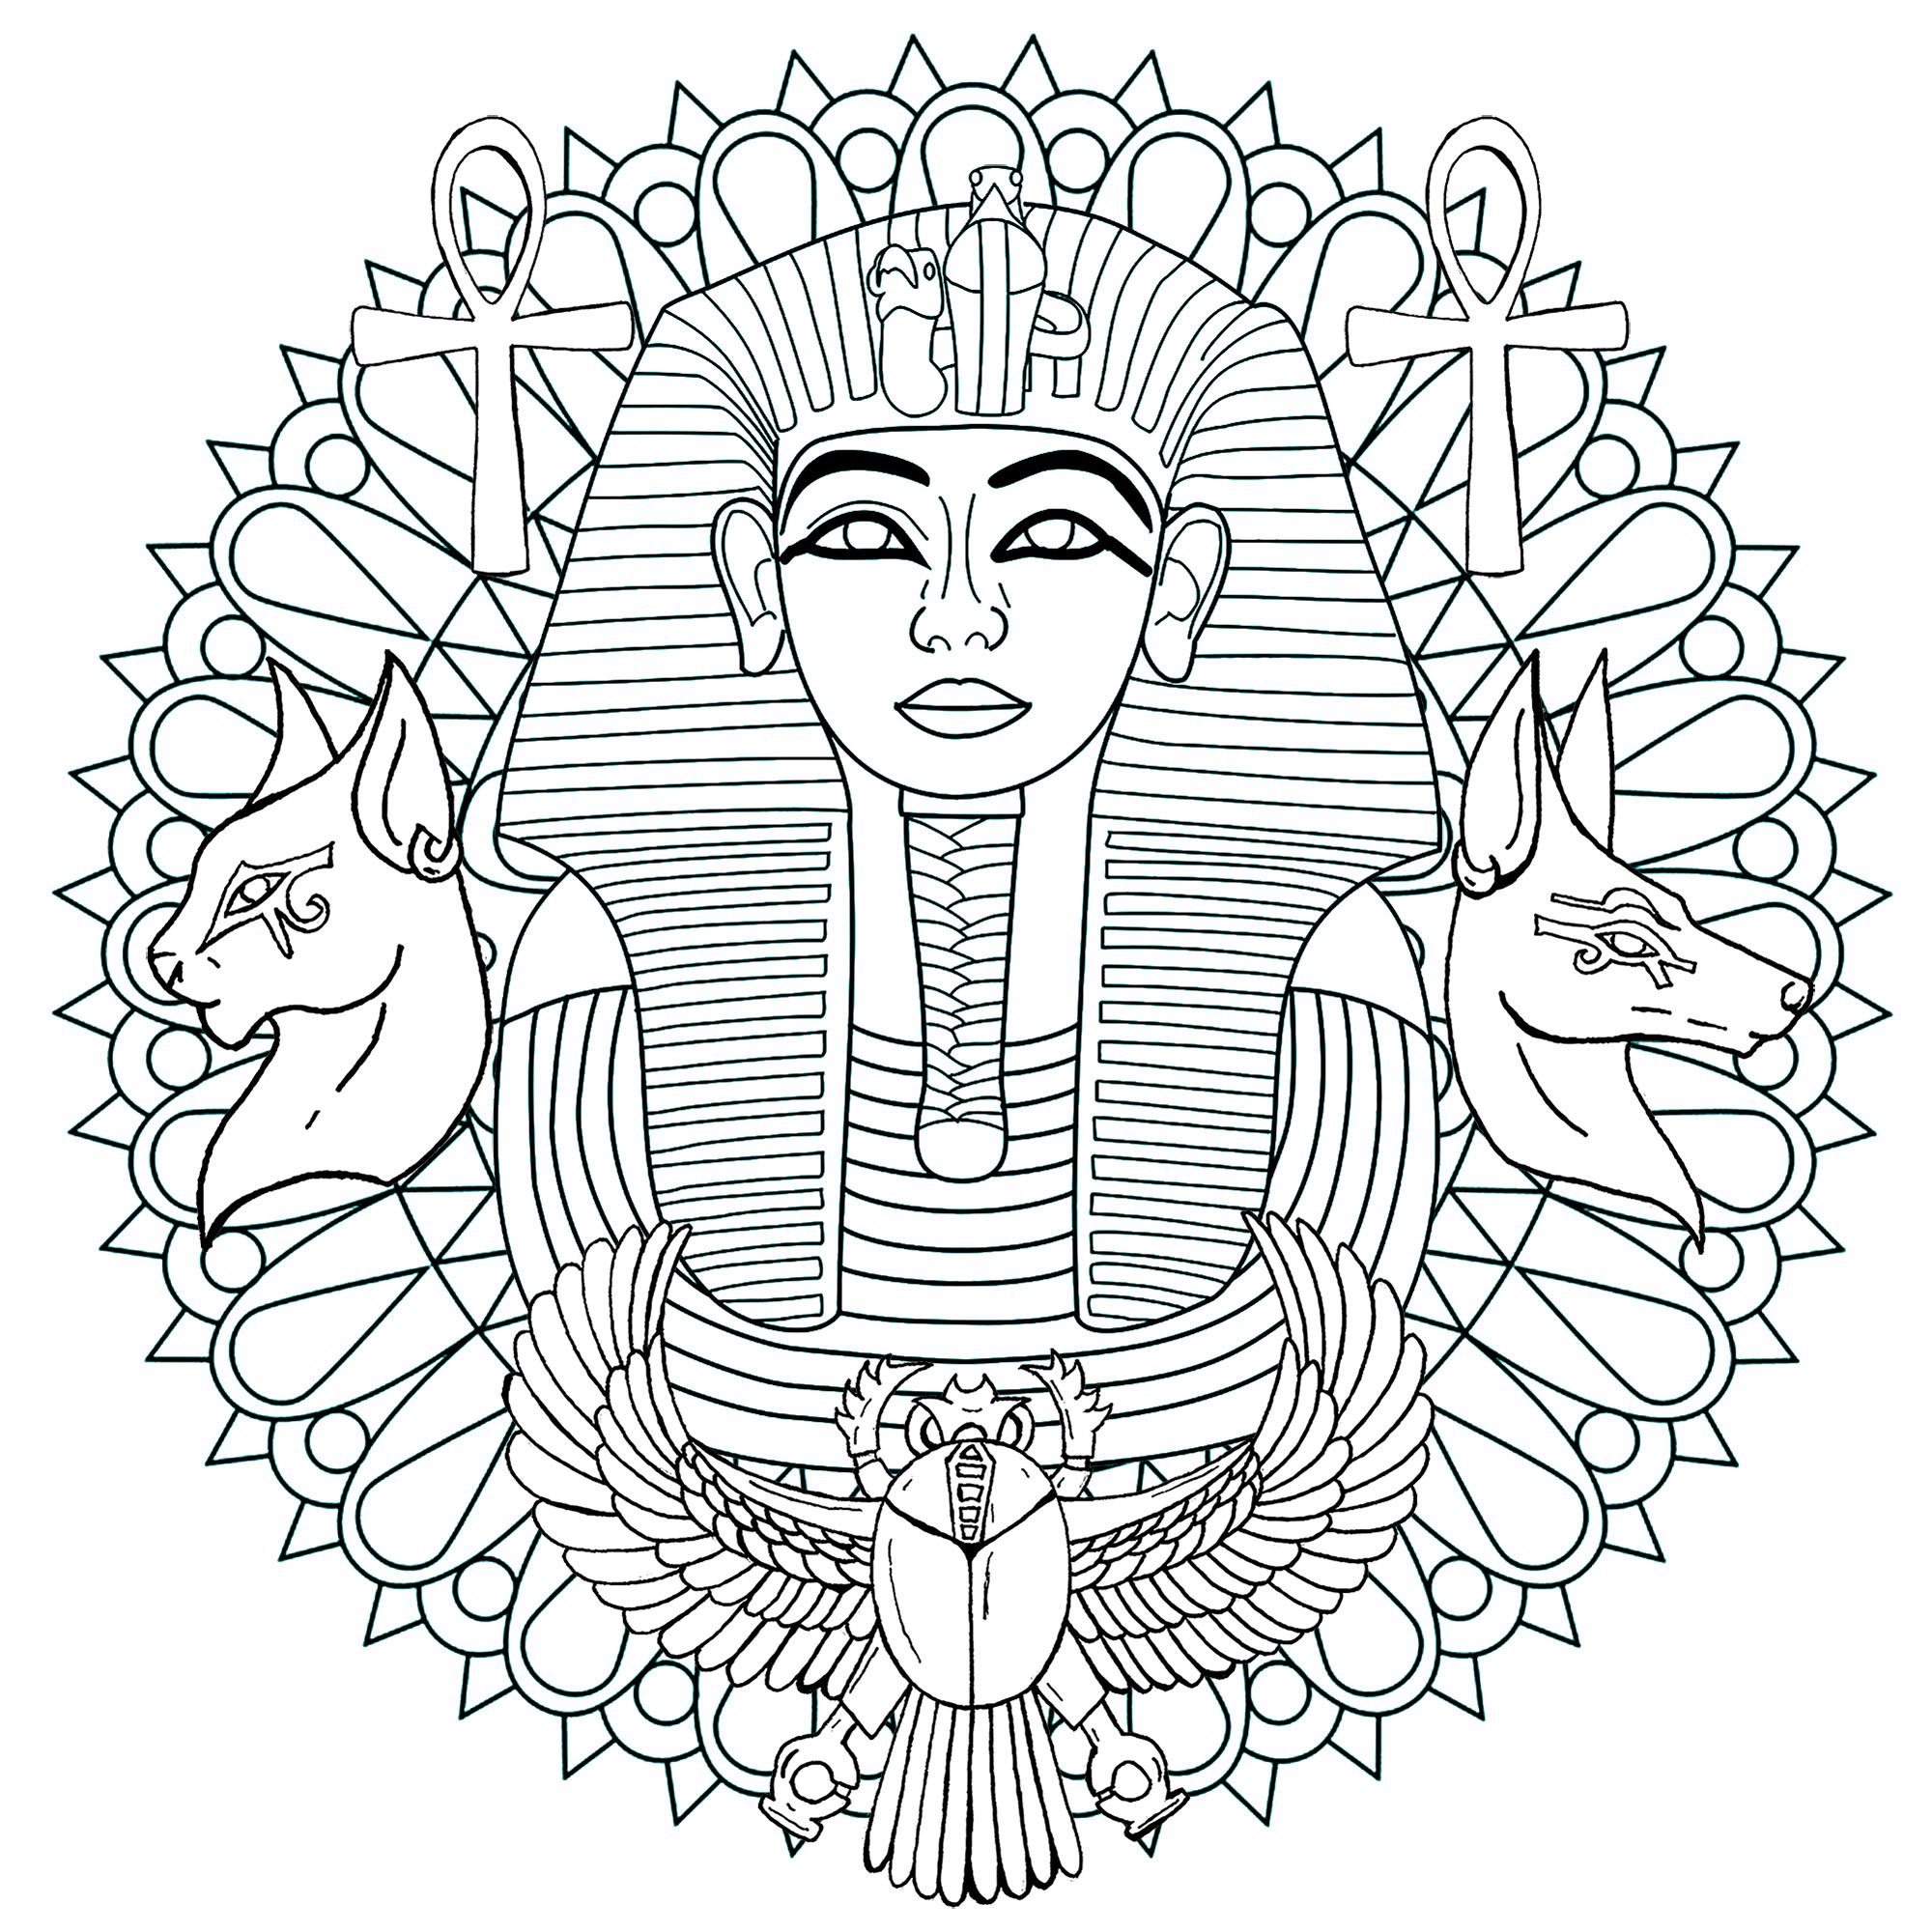 Mandala di Tutankhamon. Faraone della XVIII dinastia, Tutankhamon governò l'antico Egitto nel XIII secolo a.C..